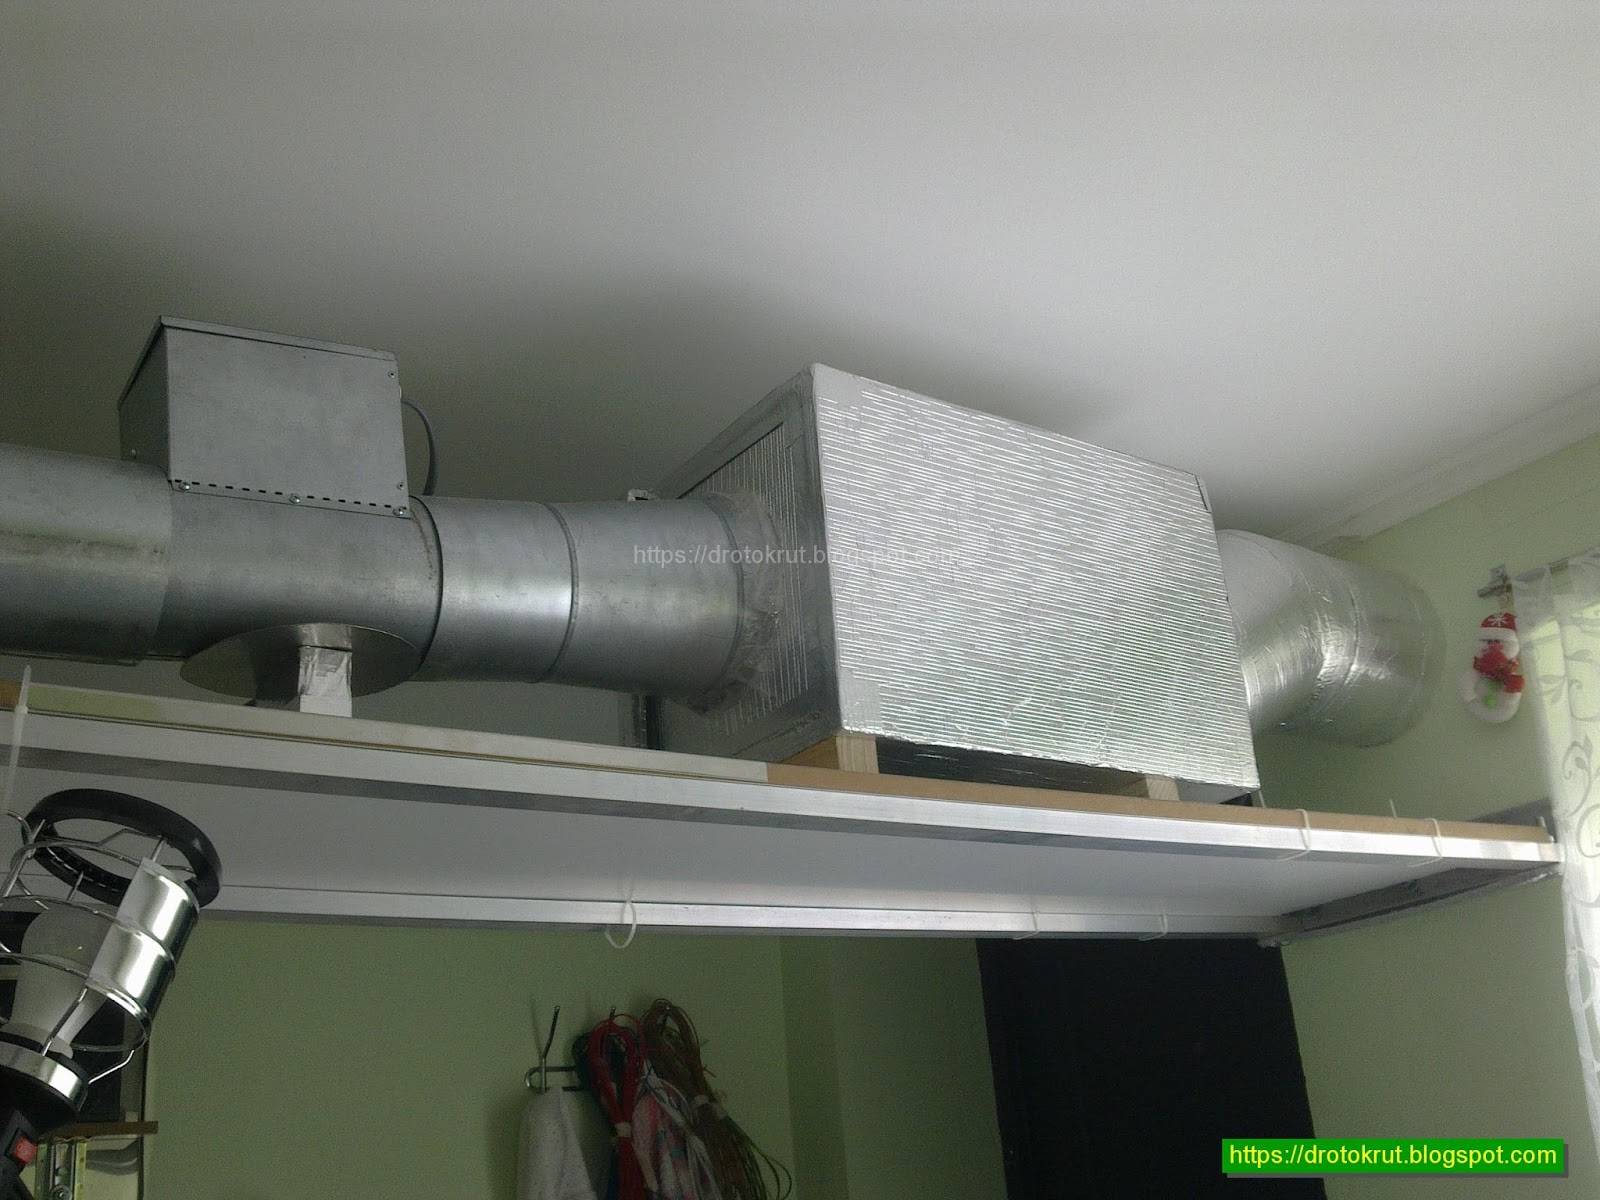 Приточная вентиляция в квартире с фильтрацией